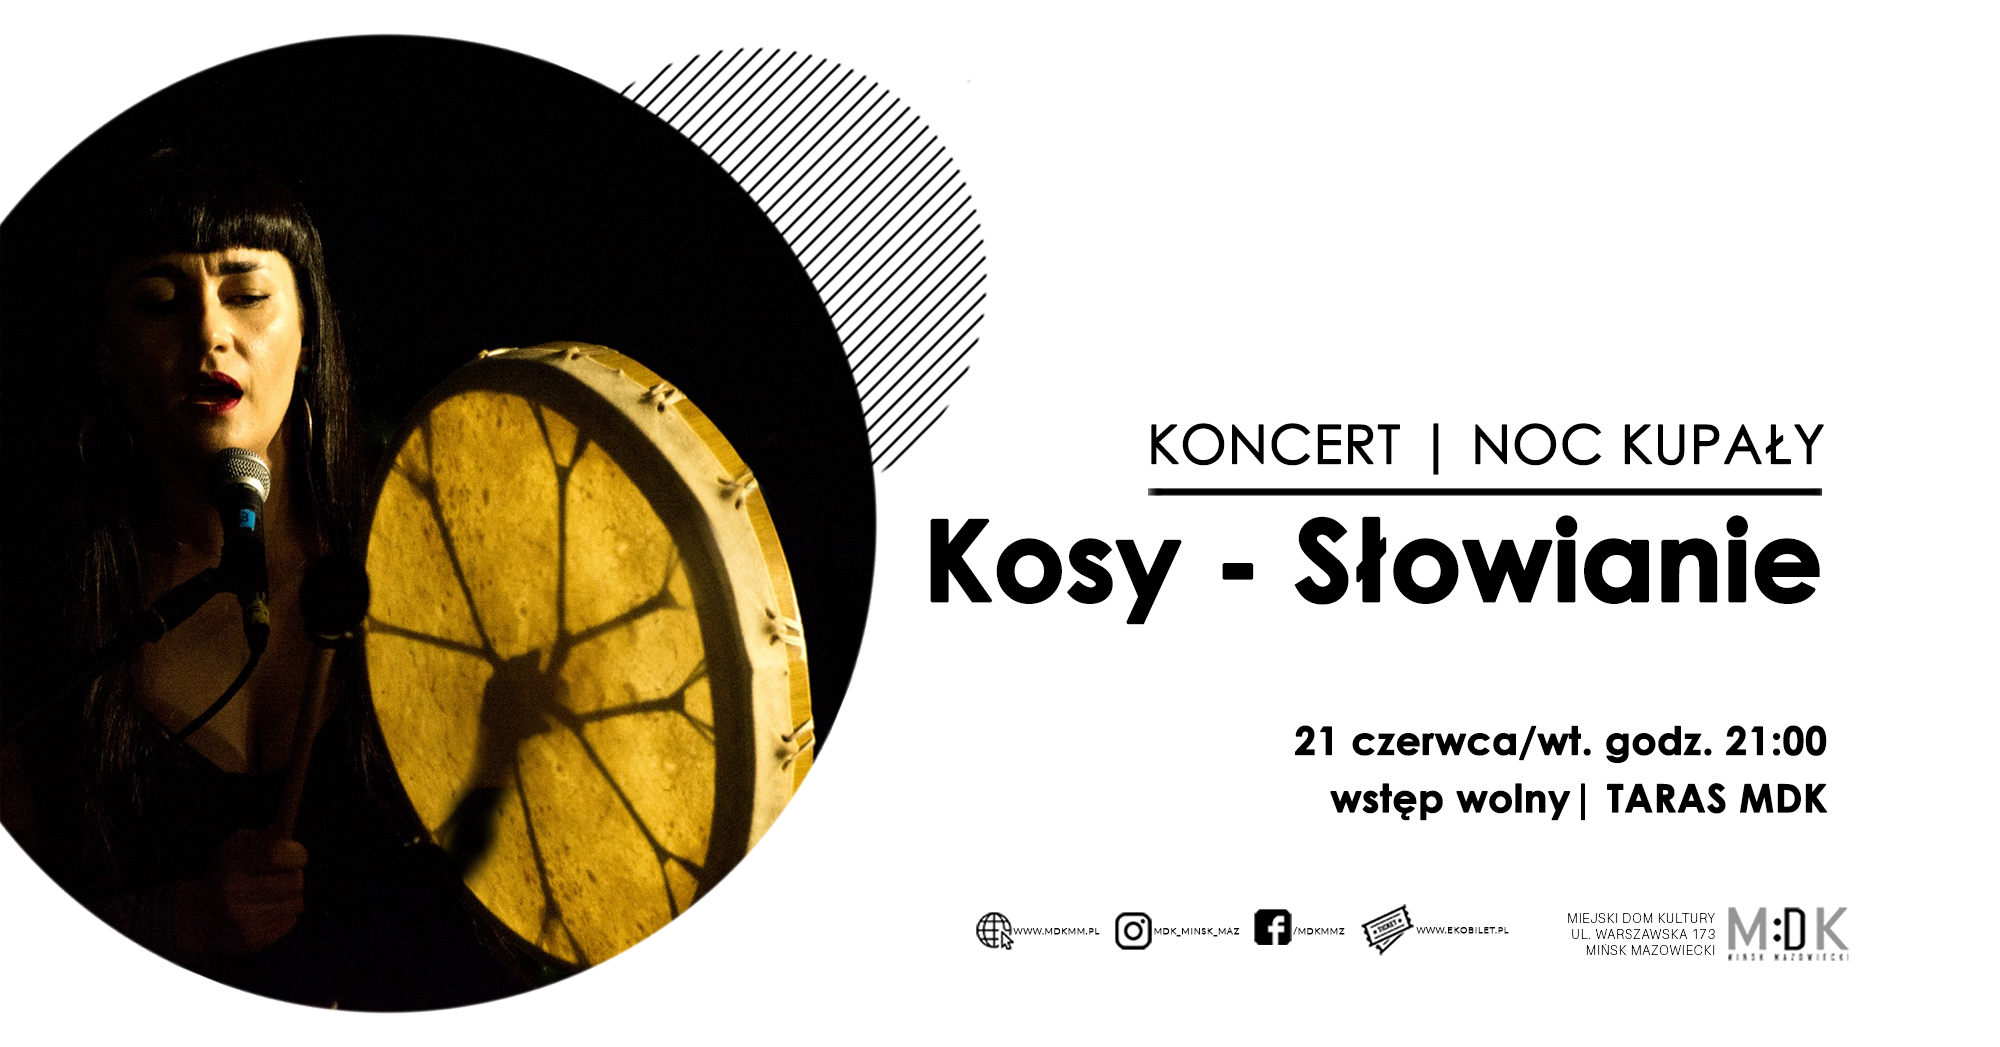 Kosy - Słowianie | koncert Noc Kupały